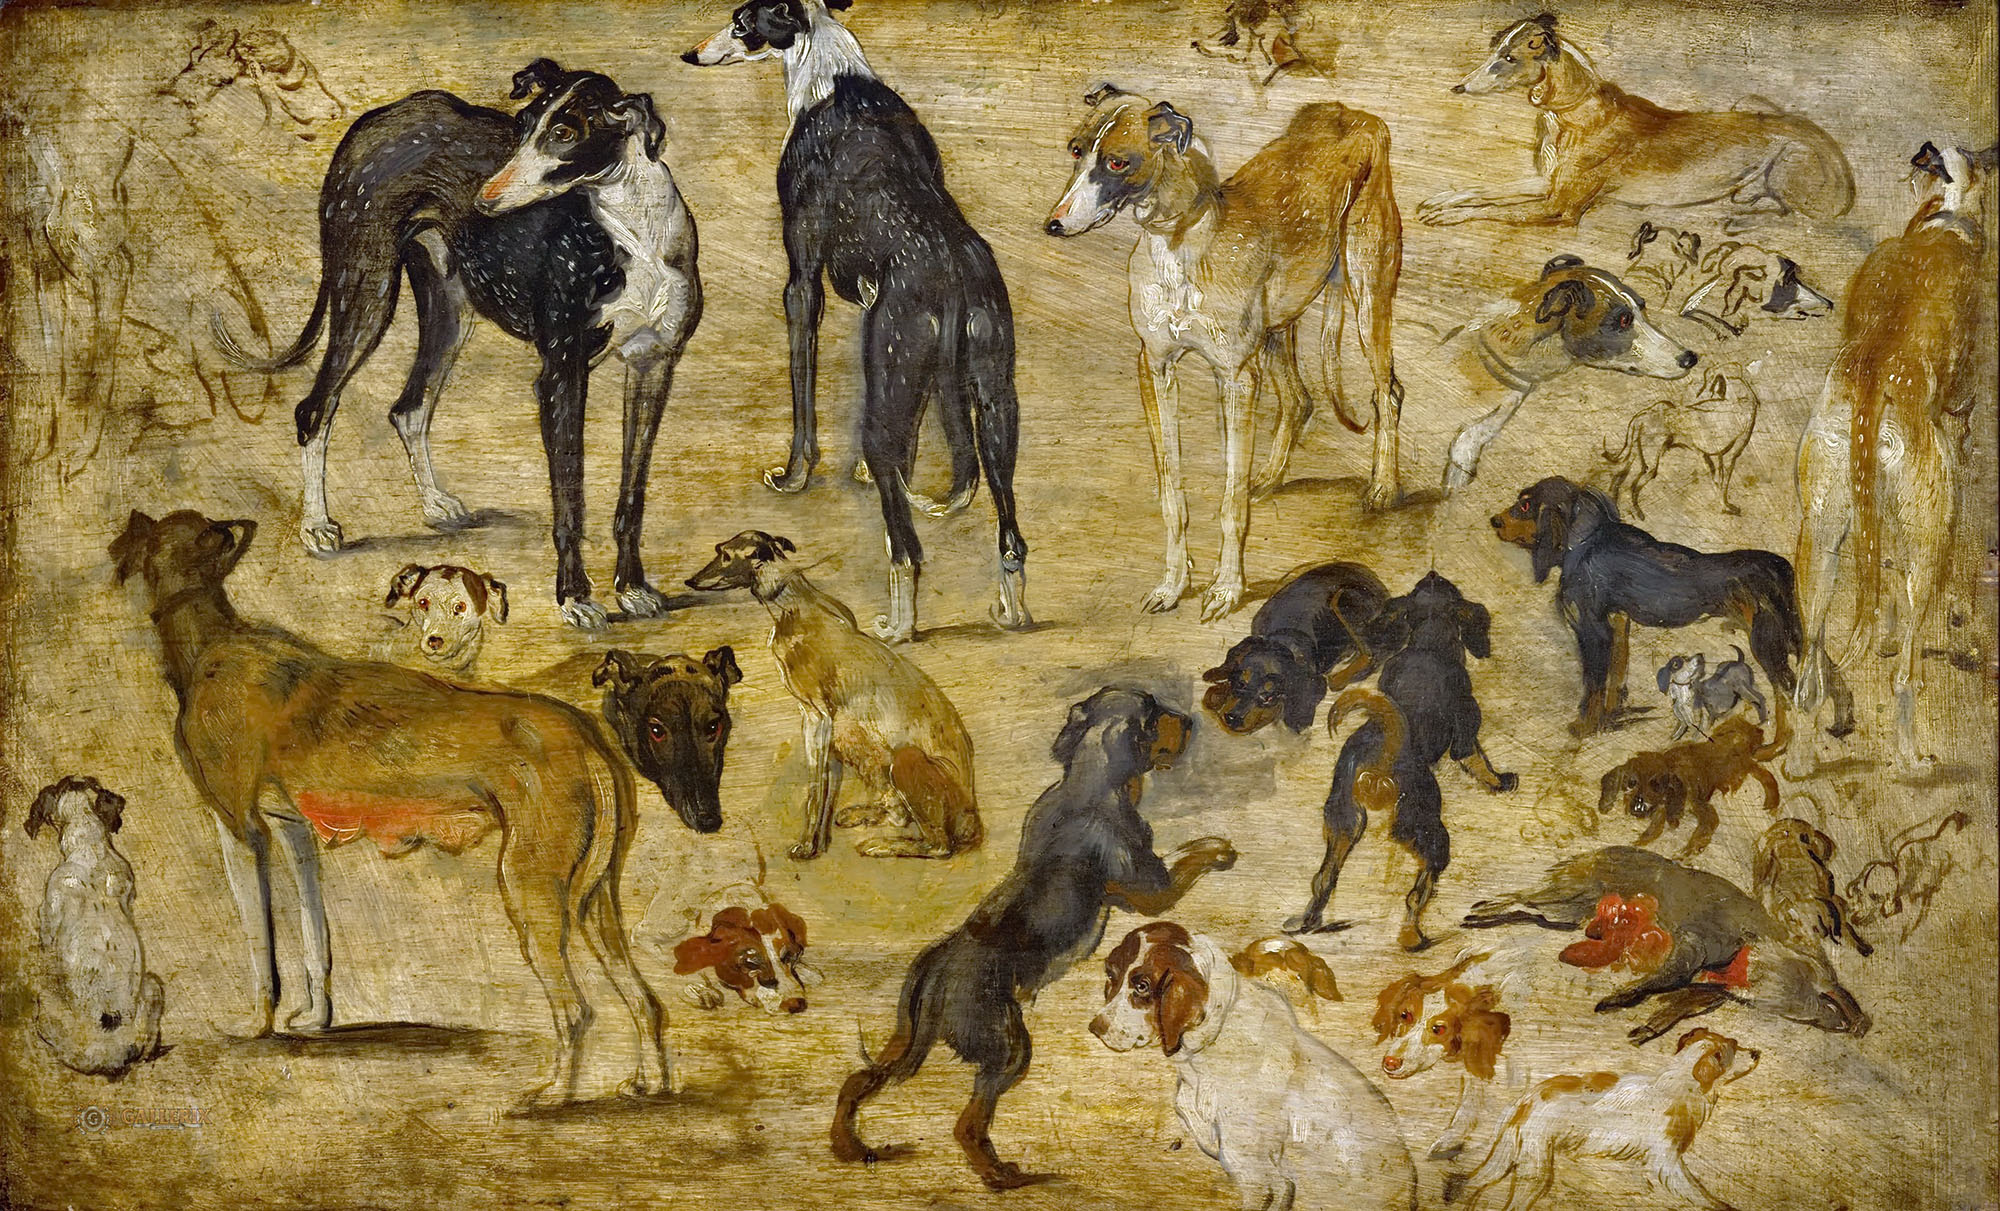 Ян Брейгель Старший. "Эскизы собак". Около 1616. Художественно-исторический музей, Вена.